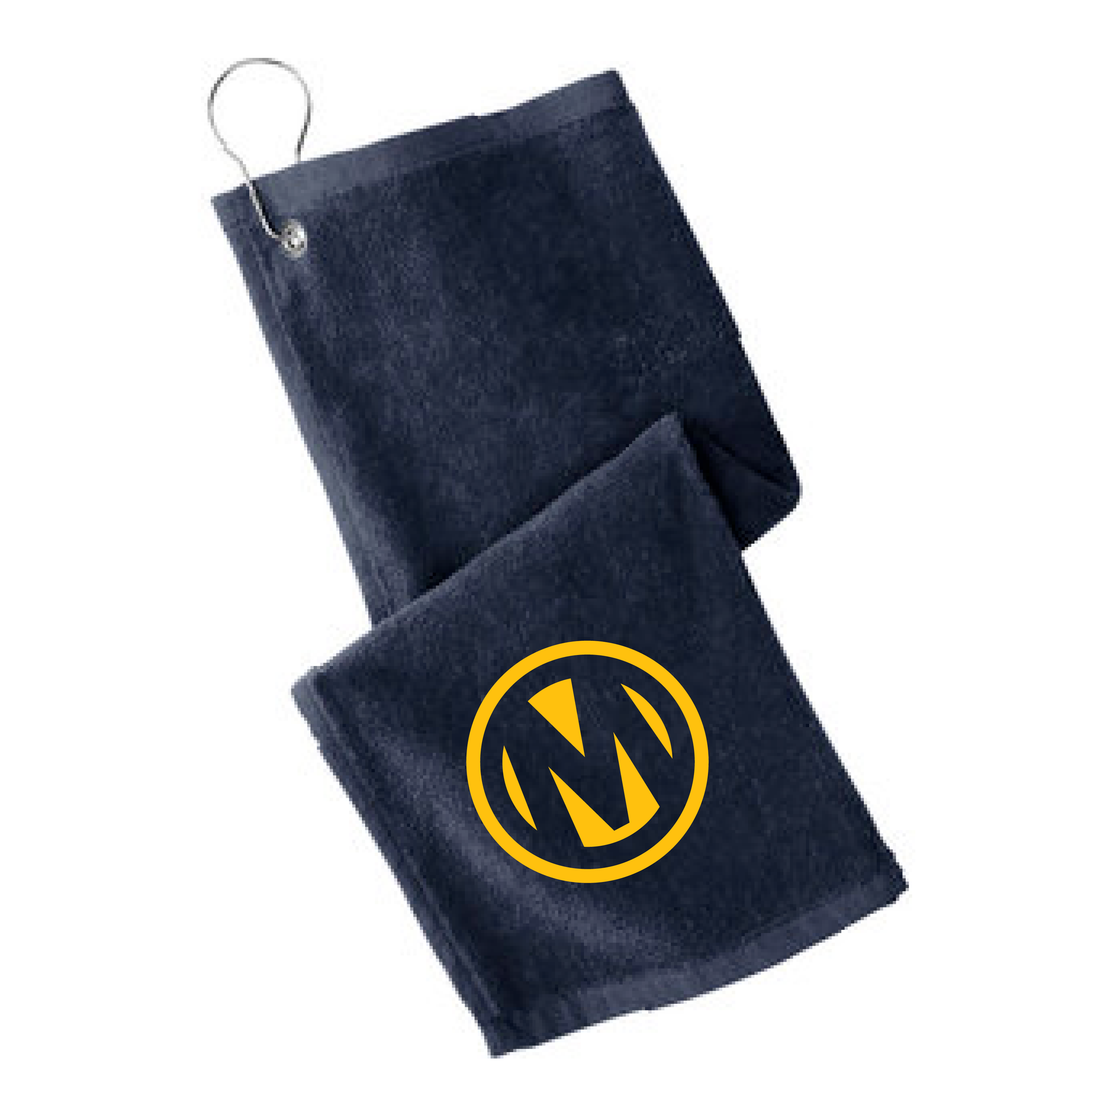 Manheim Mississippi Golf Shoe Bag & Towel